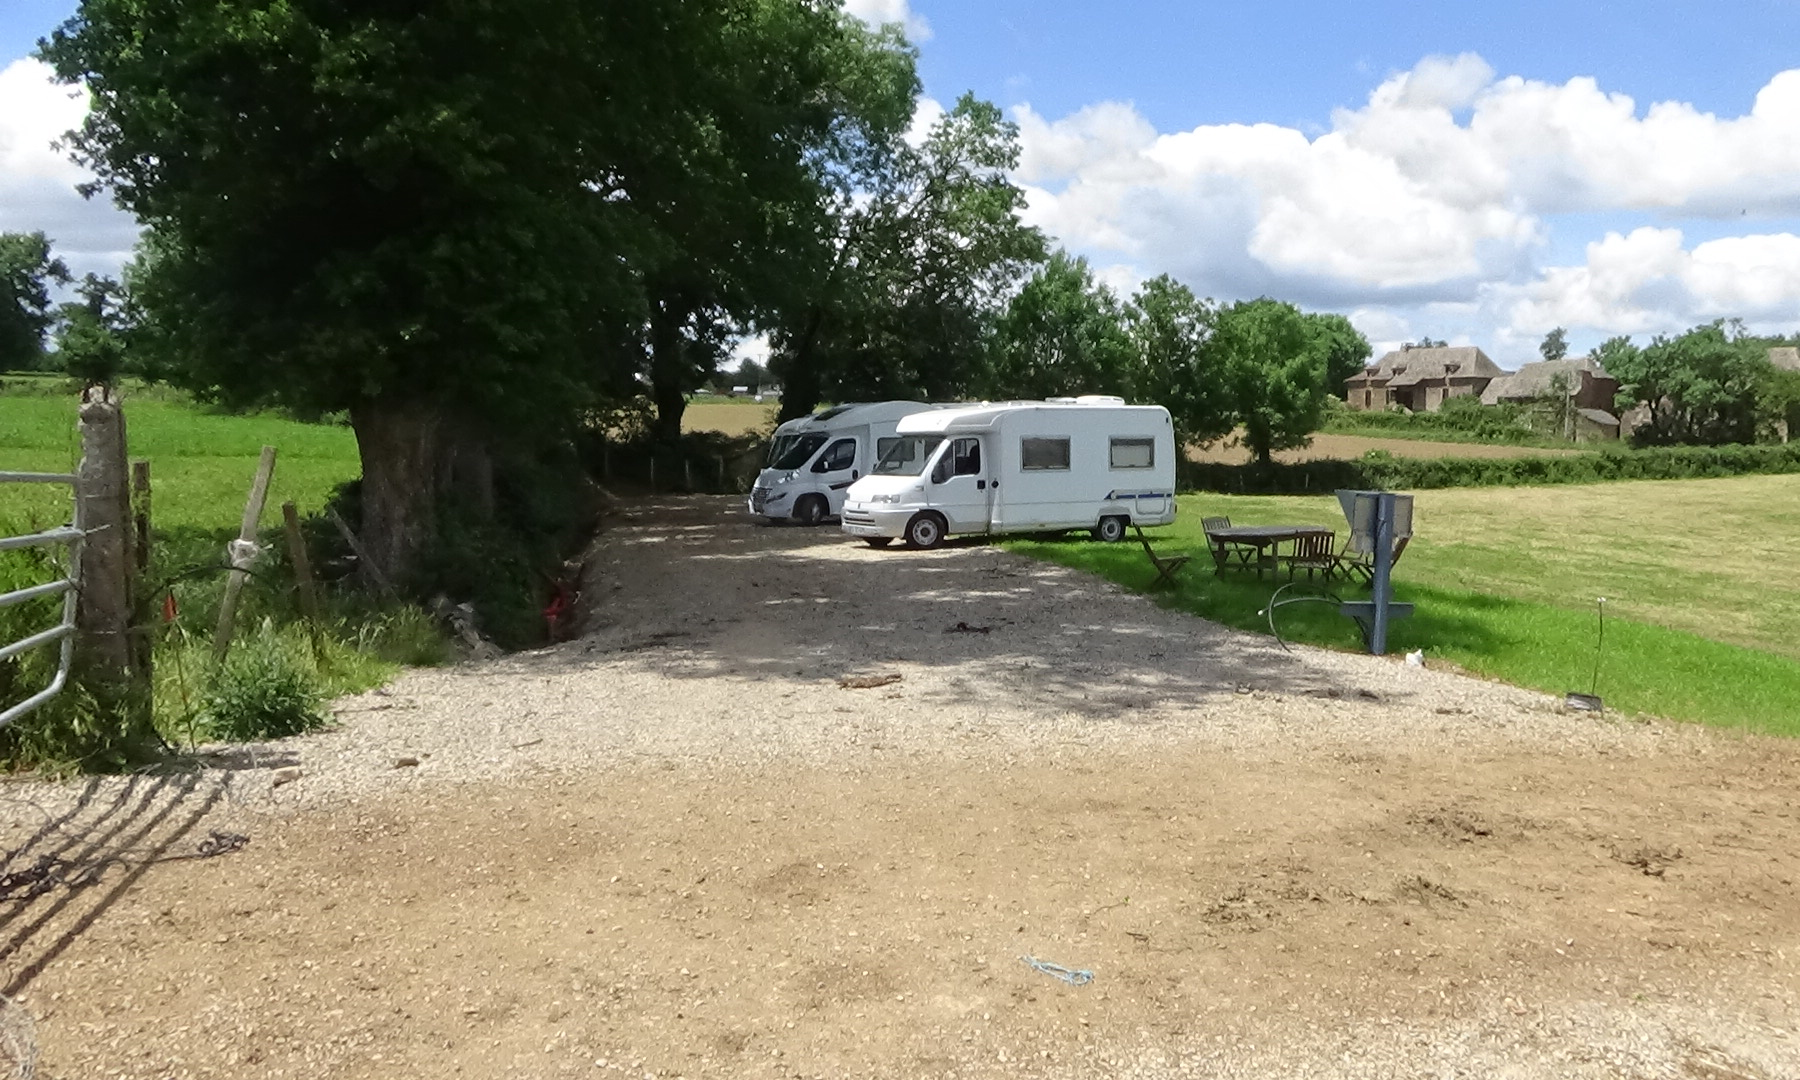 Accueil de Camping Cars, un espace dédié au camping car au coeur de l'aveyron à proximité de Rodez avec de nombreuses commodités (sanitaires, vidange, électricité, ...)